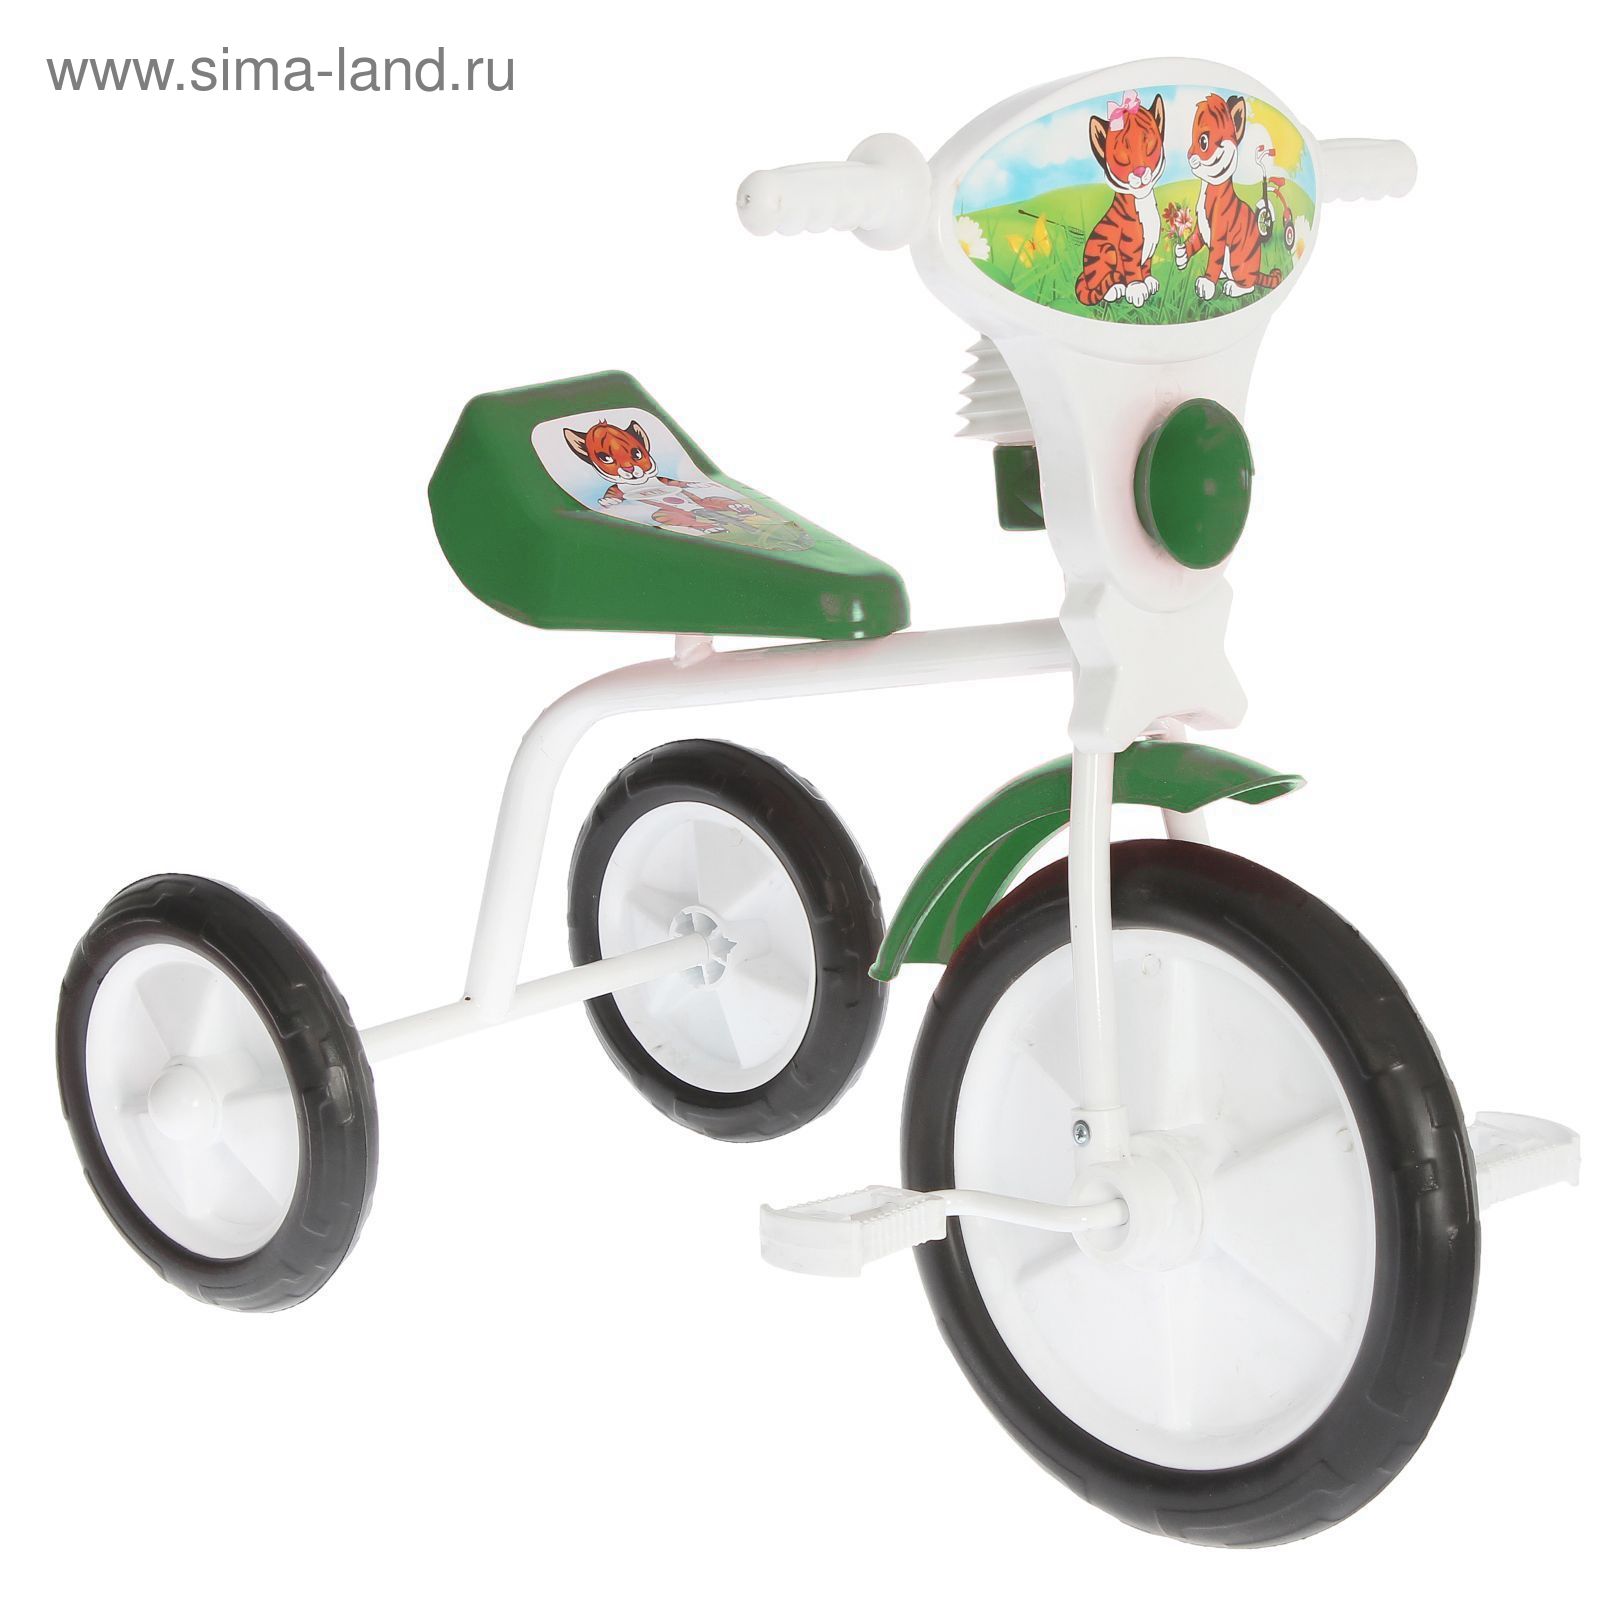 Велосипед трехколесный "Малыш", цвет: зеленый